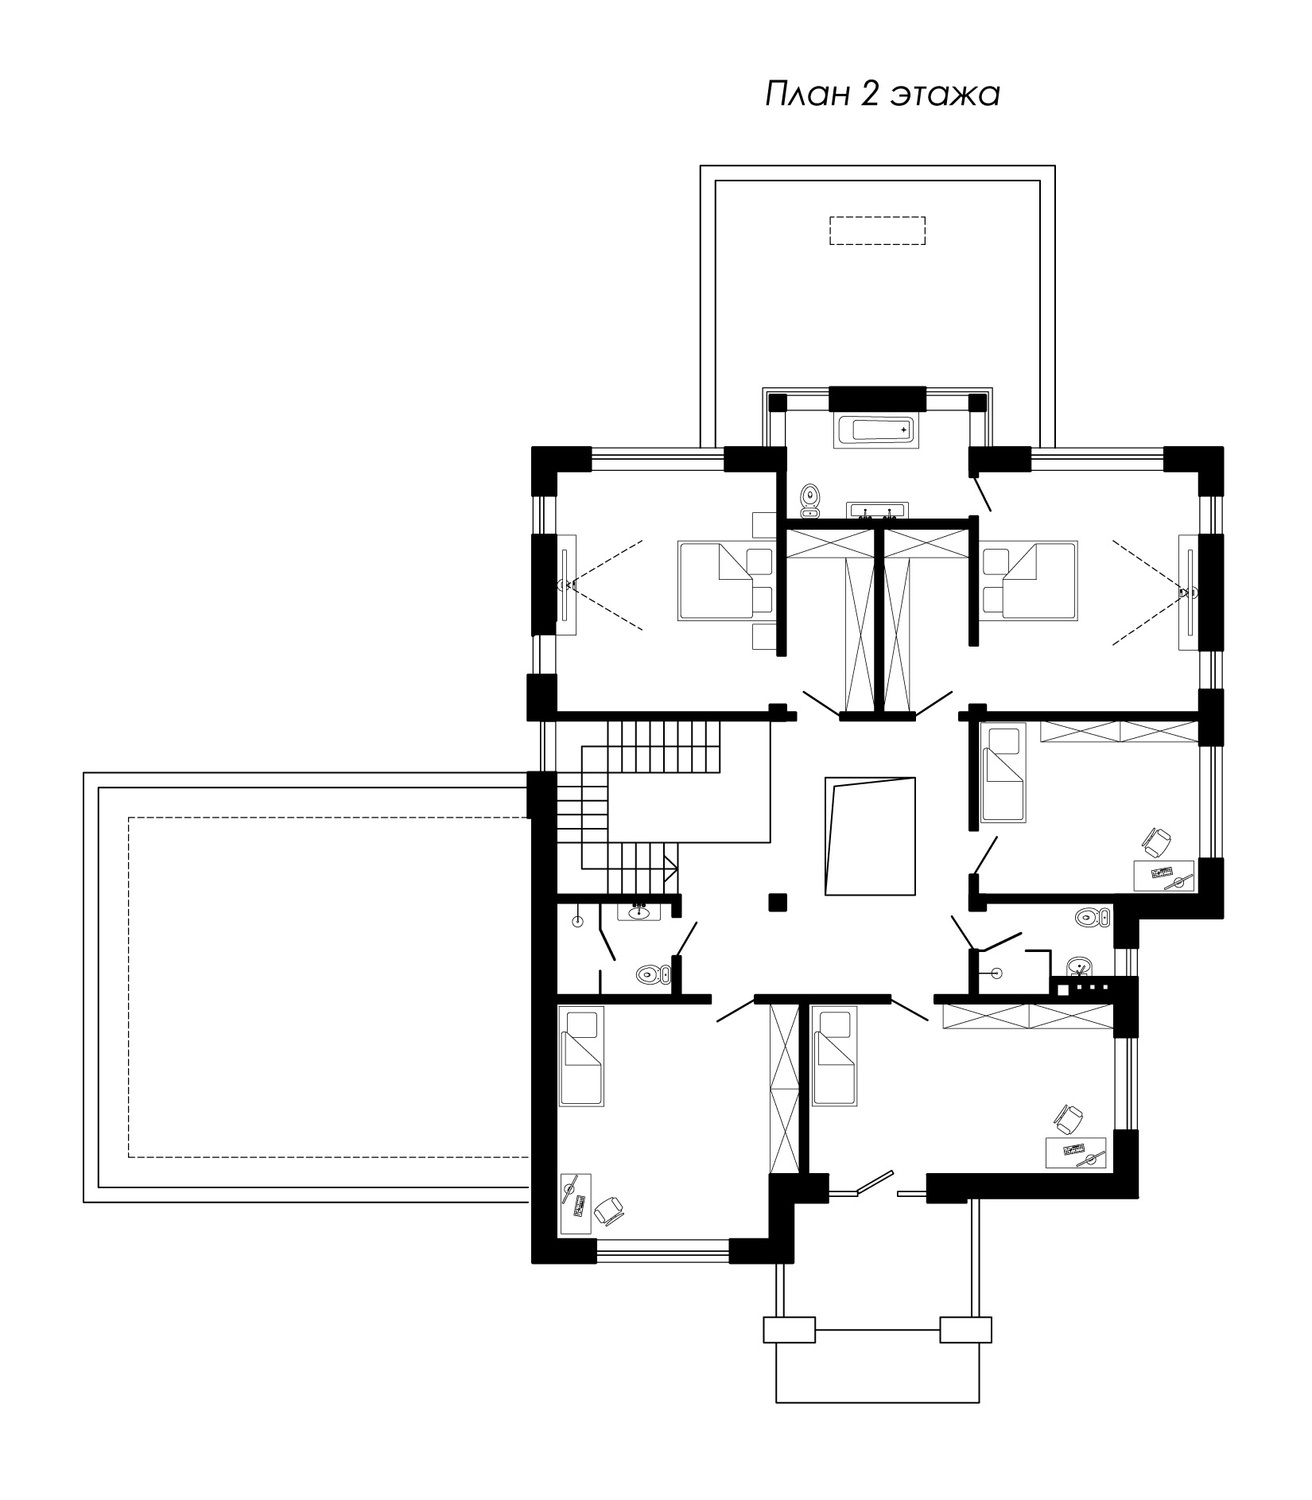 план современного дома 2